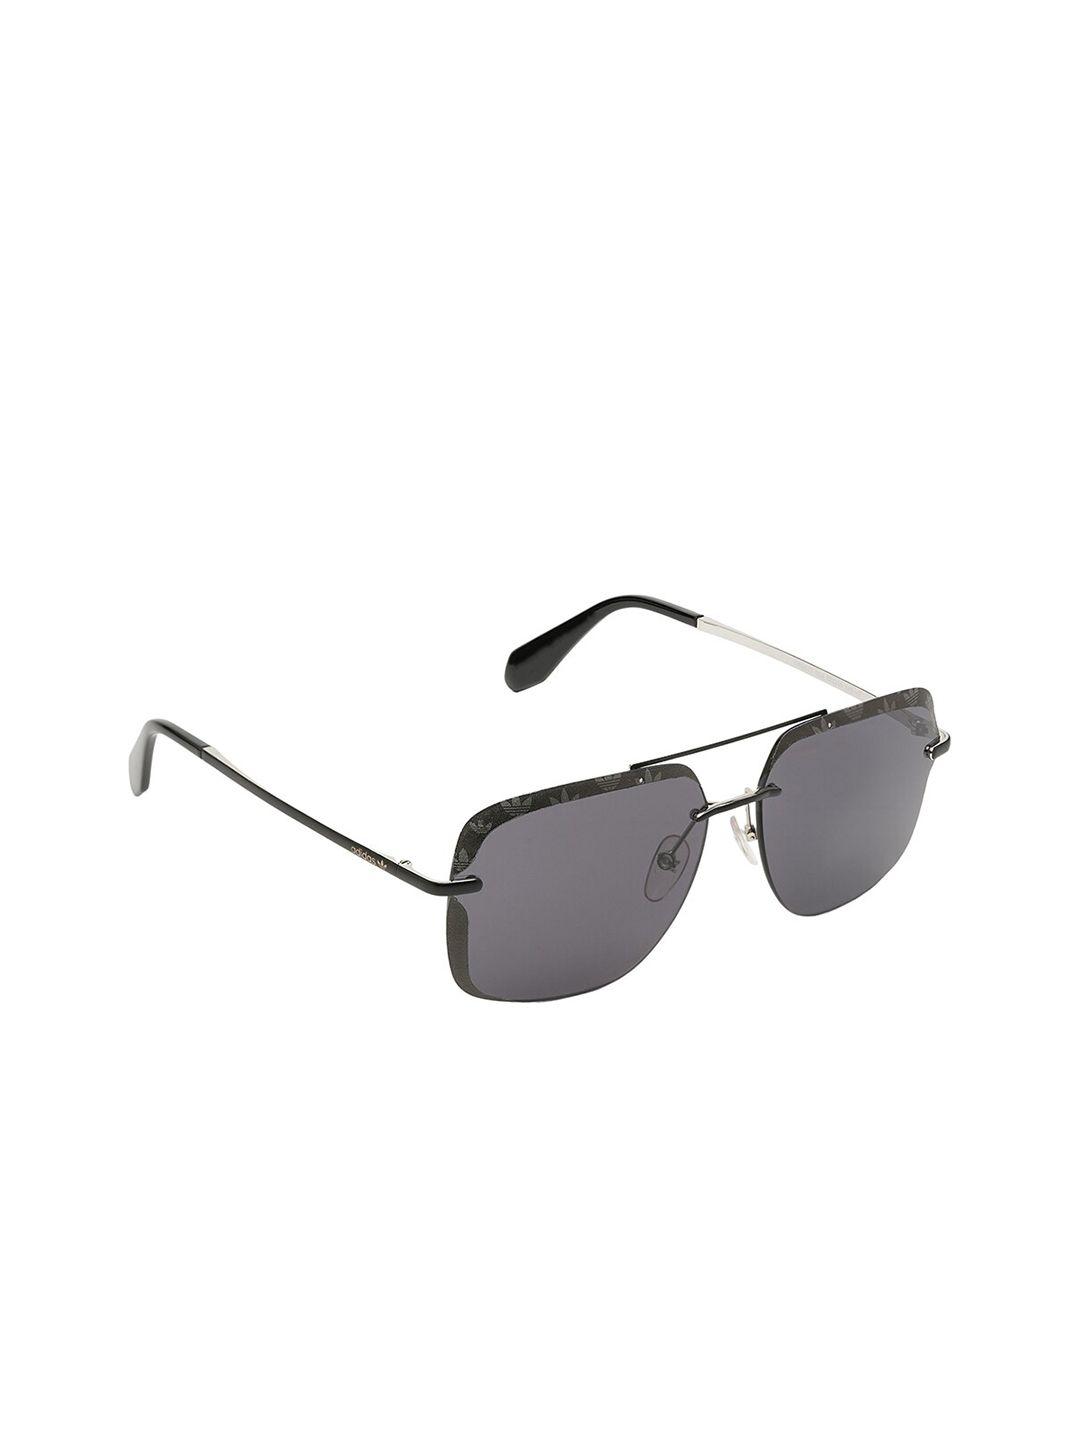 adidas-men-uv-protected-square-sunglasses